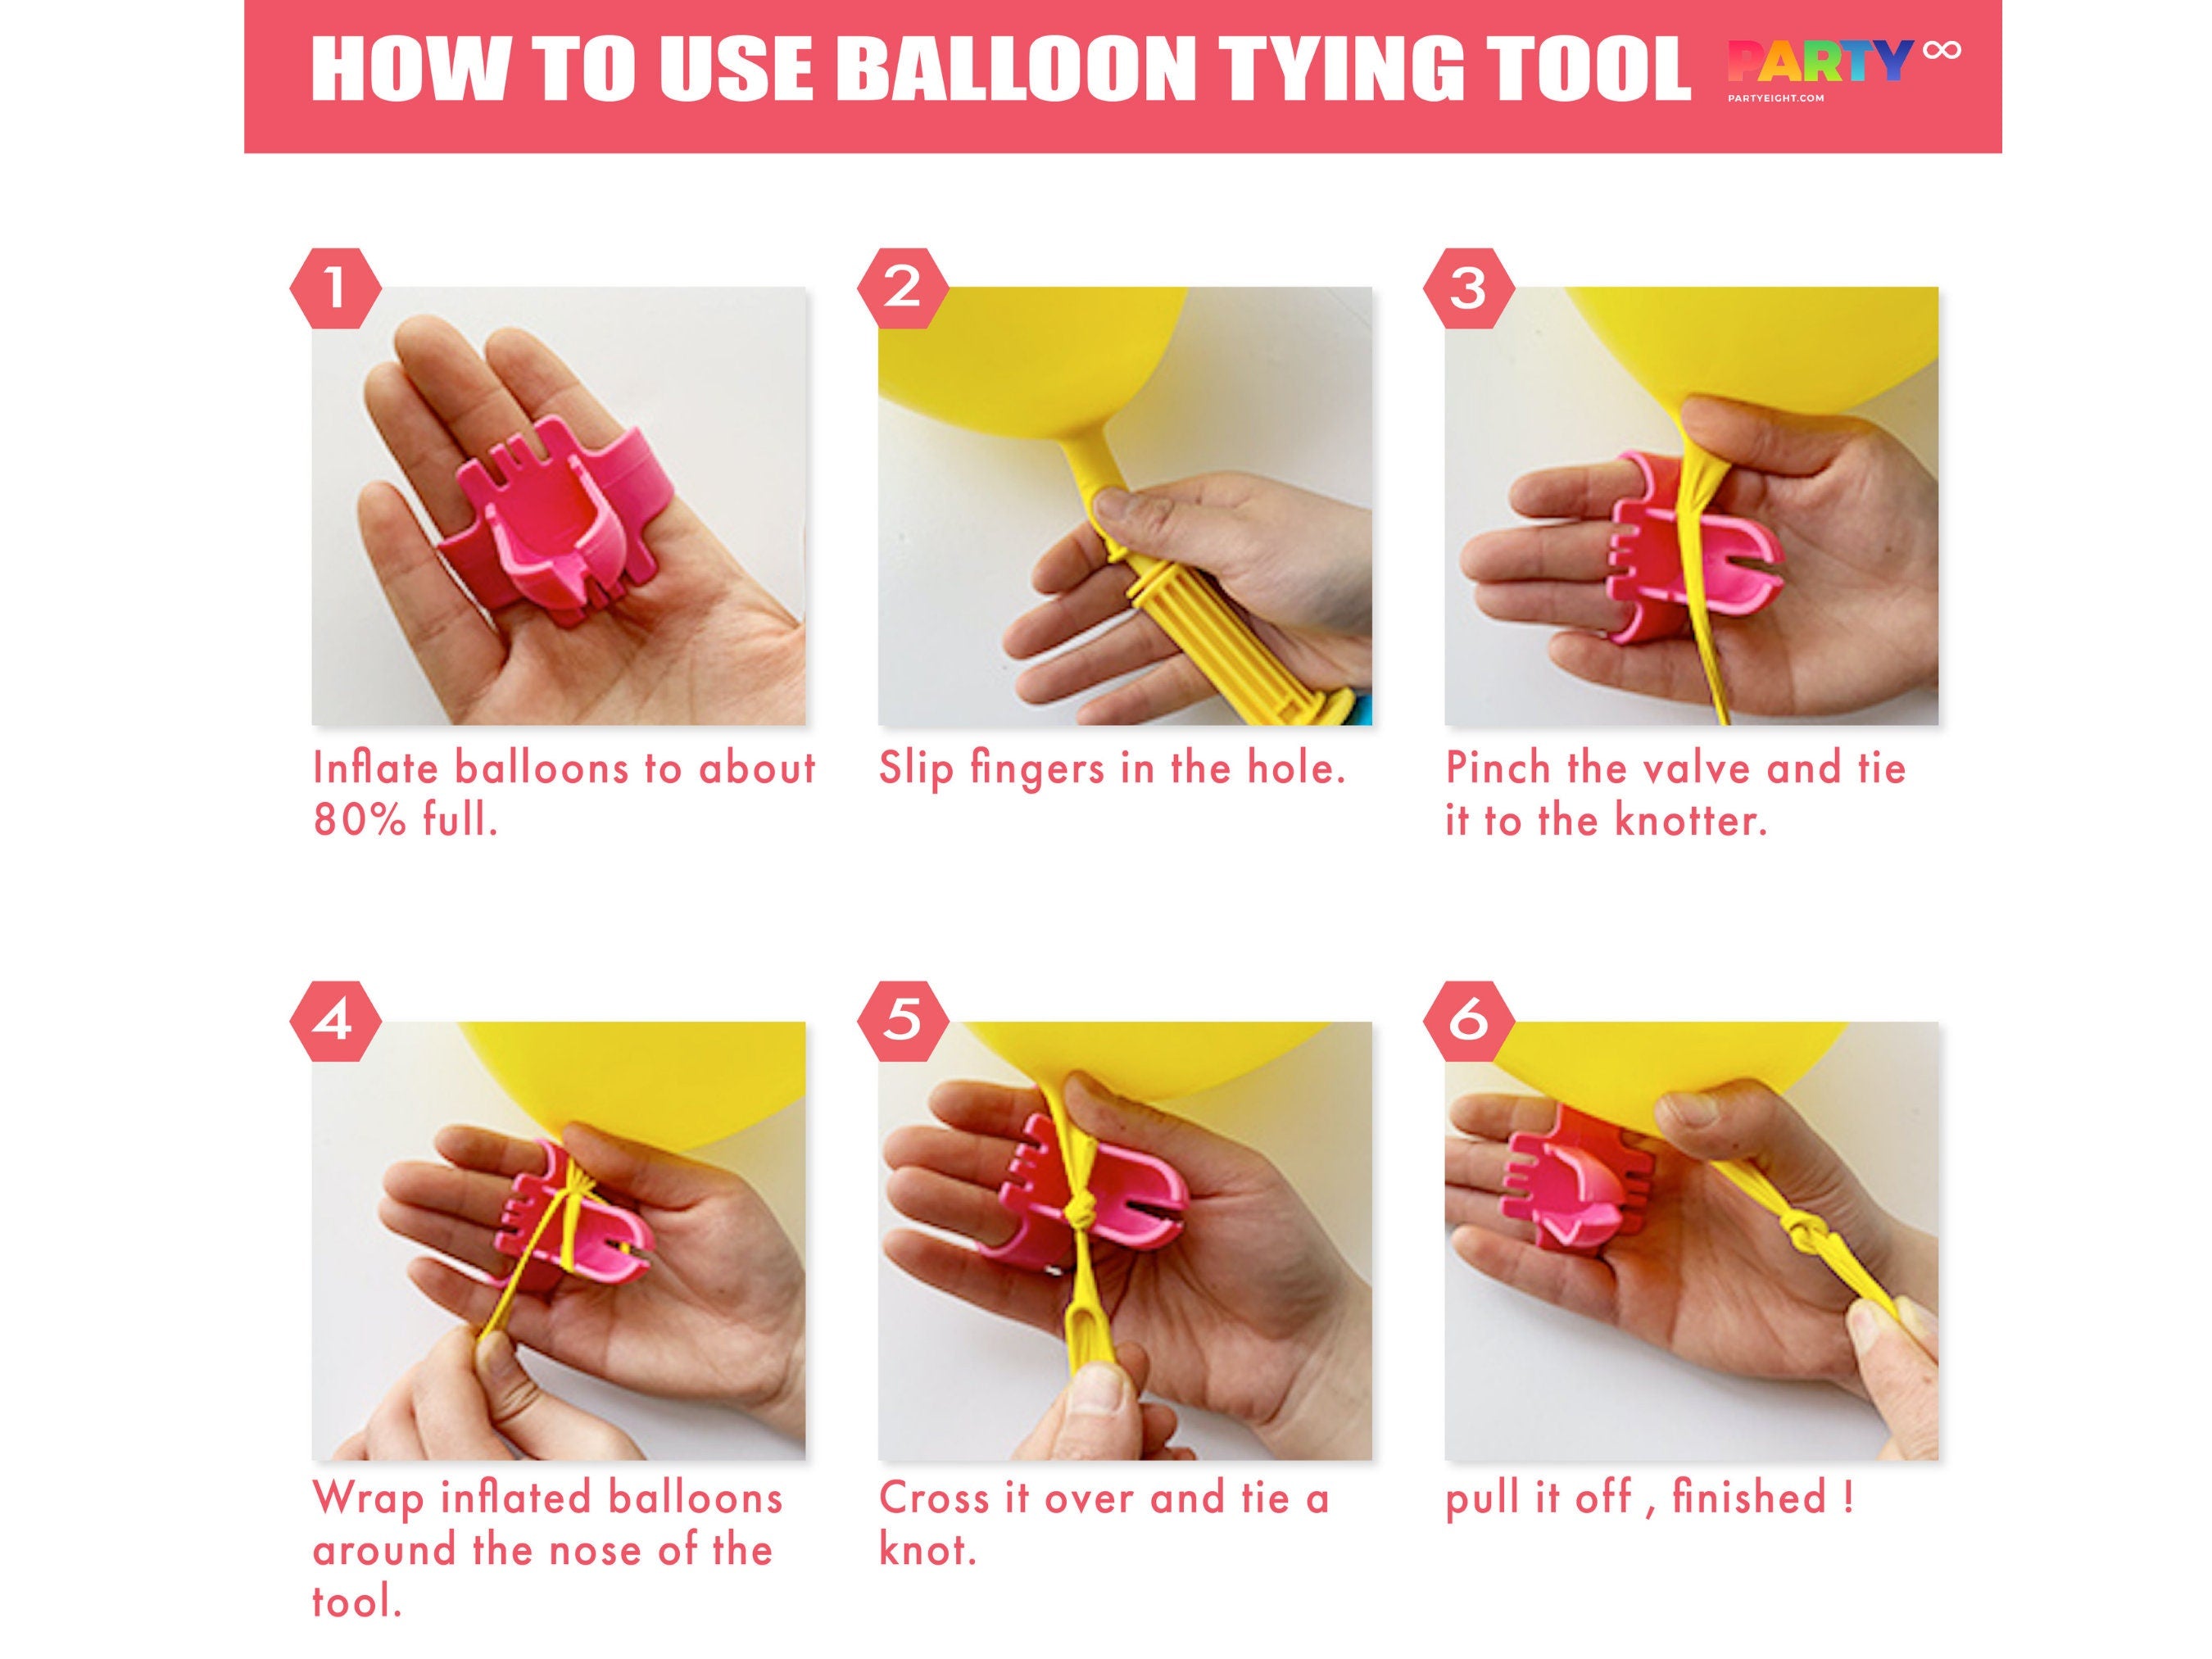 Easter boho style balloon garland DIY kit